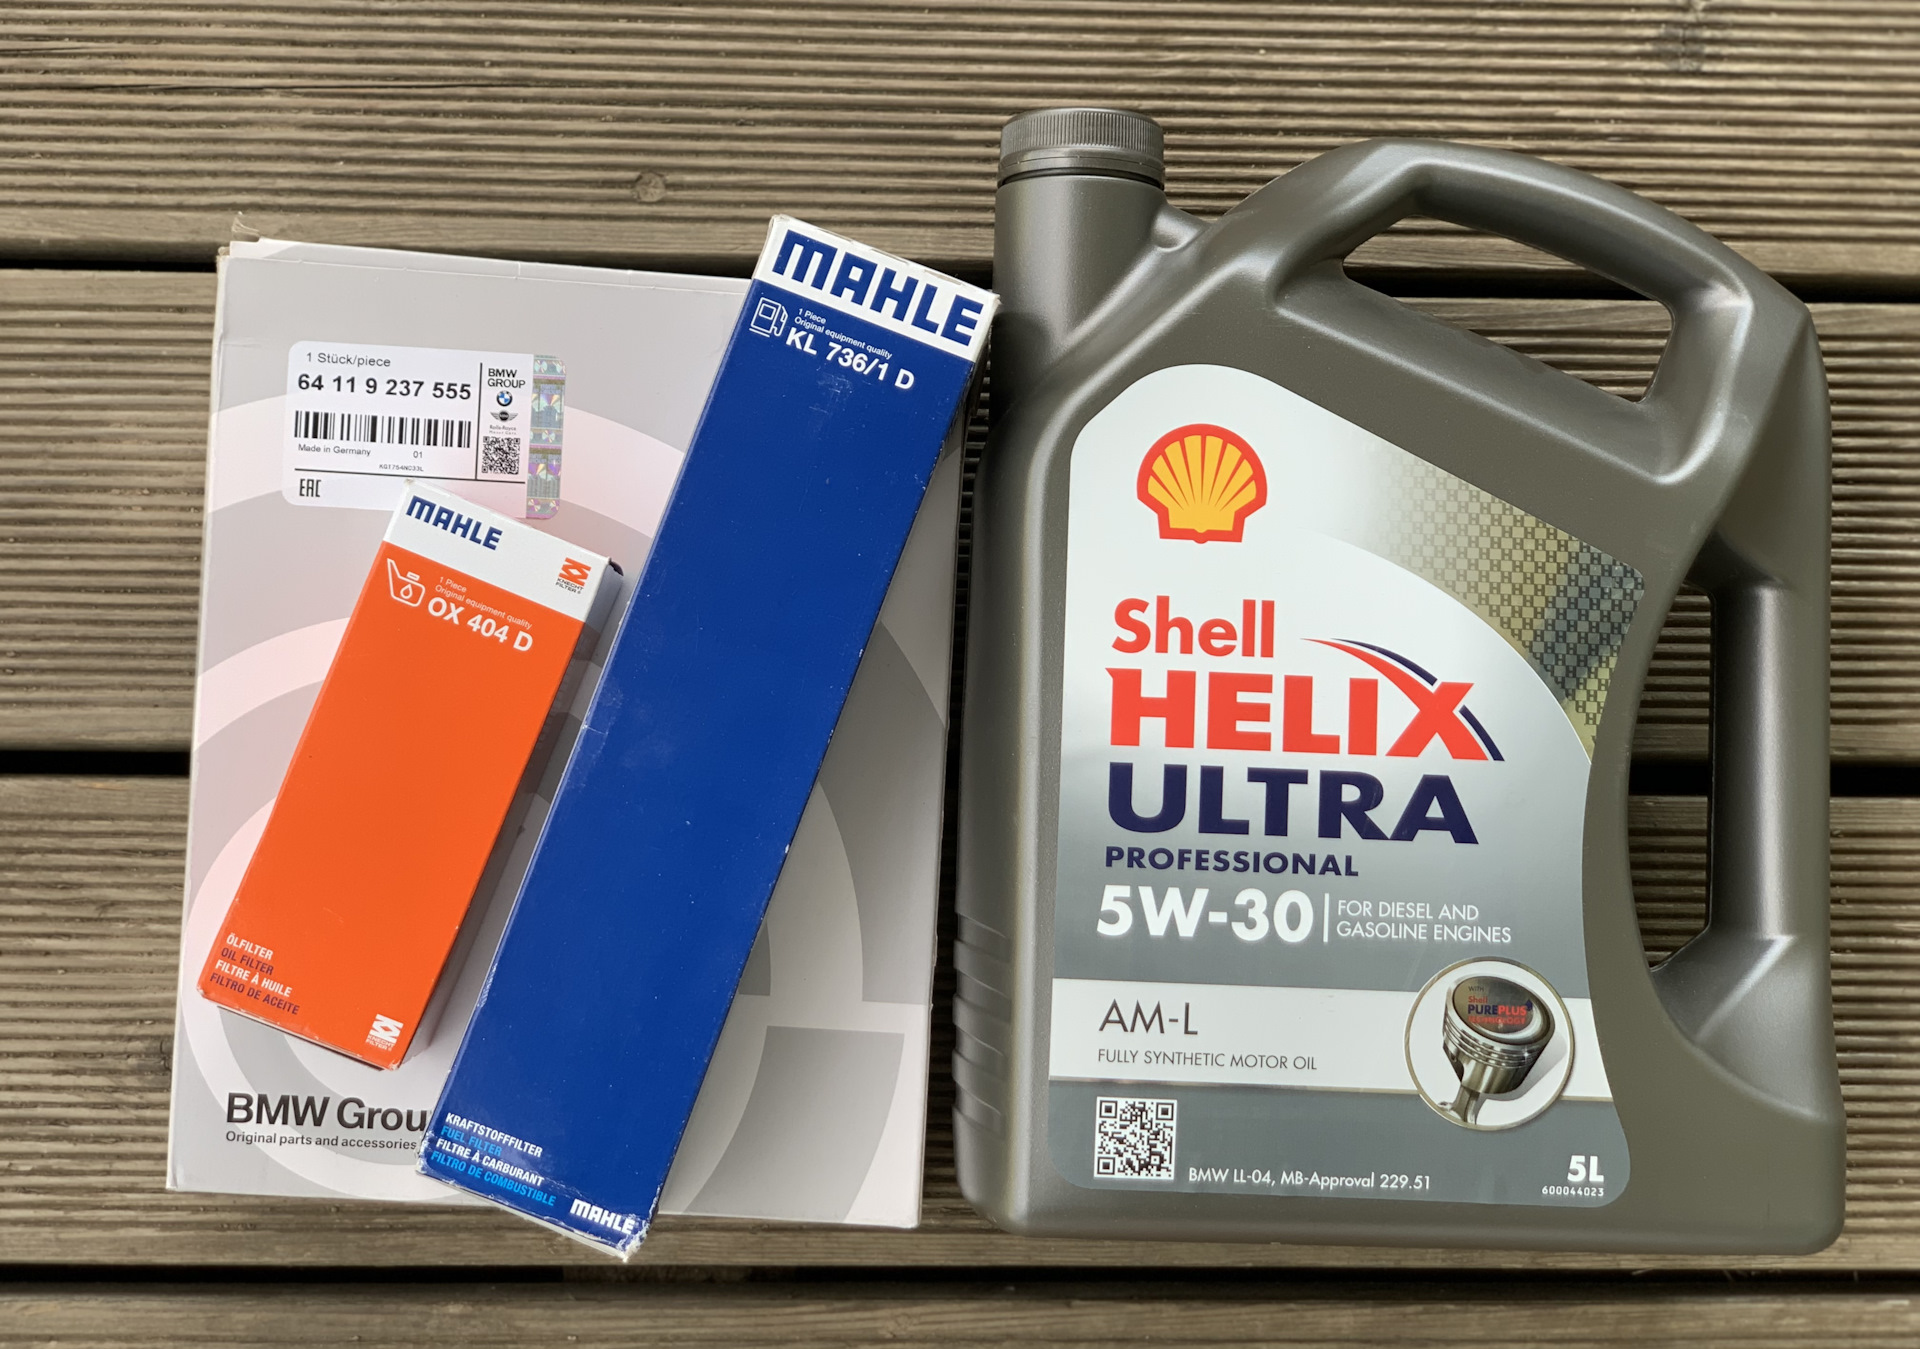 Helix ultra am l. Shell Helix Ultra коробка. Шелл Хеликс ультра 5w30 а3/в4. Shell Helix Ultra professional am-l 5w30 бочка.